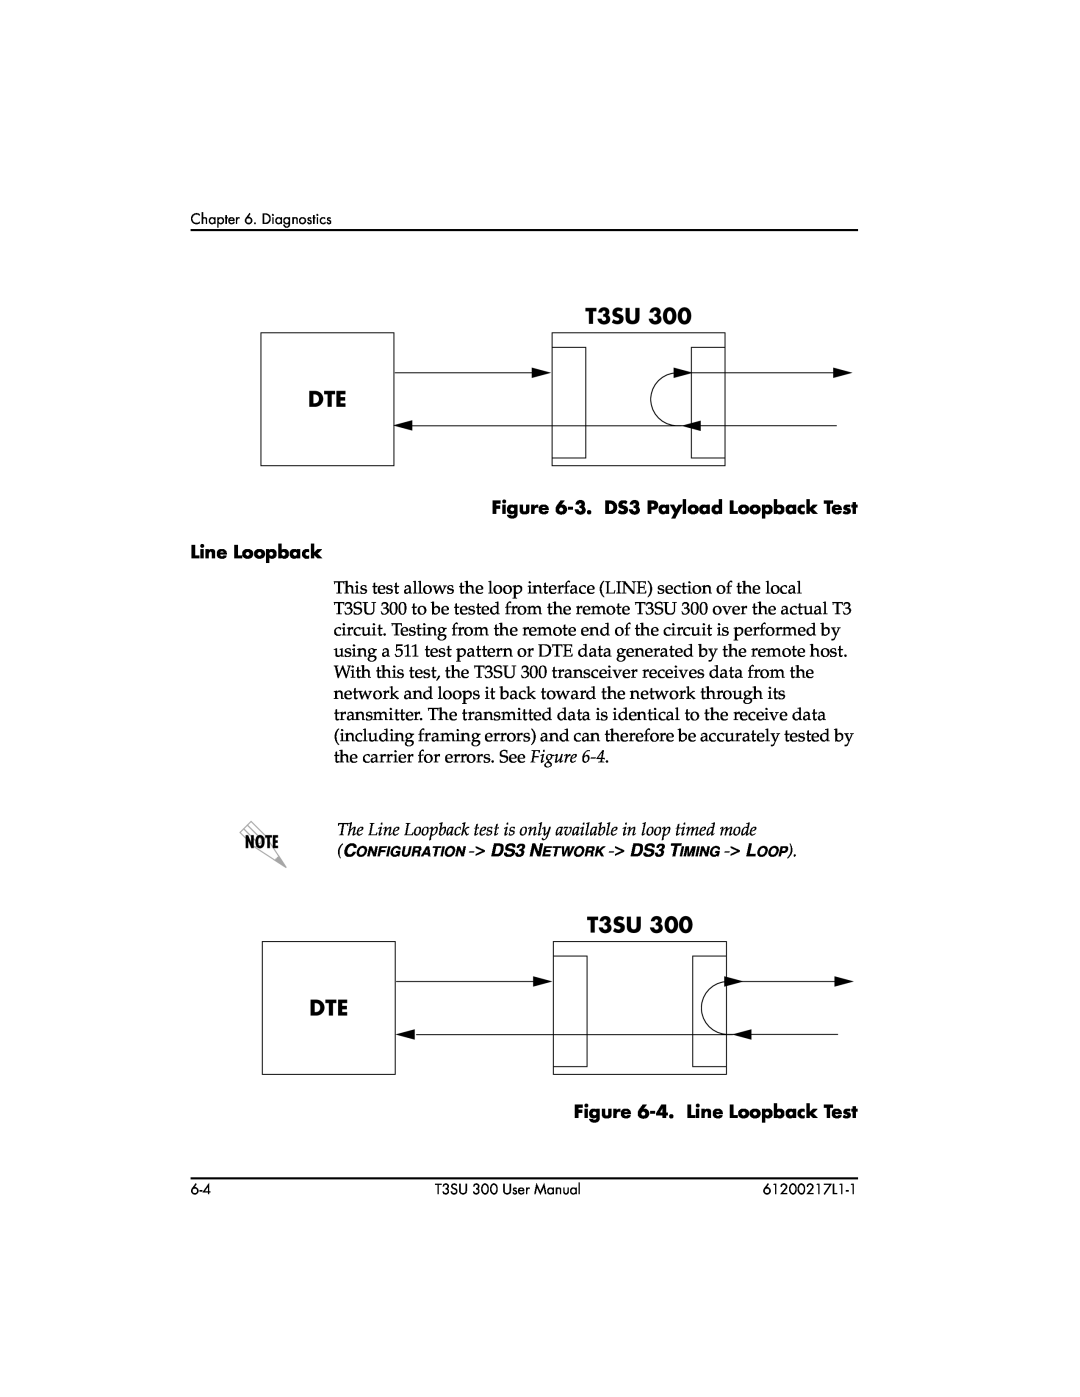 ADTRAN T3SU 300 user manual T3SU DTE, 3. DS3 Payload Loopback Test Line Loopback, 4. Line Loopback Test 